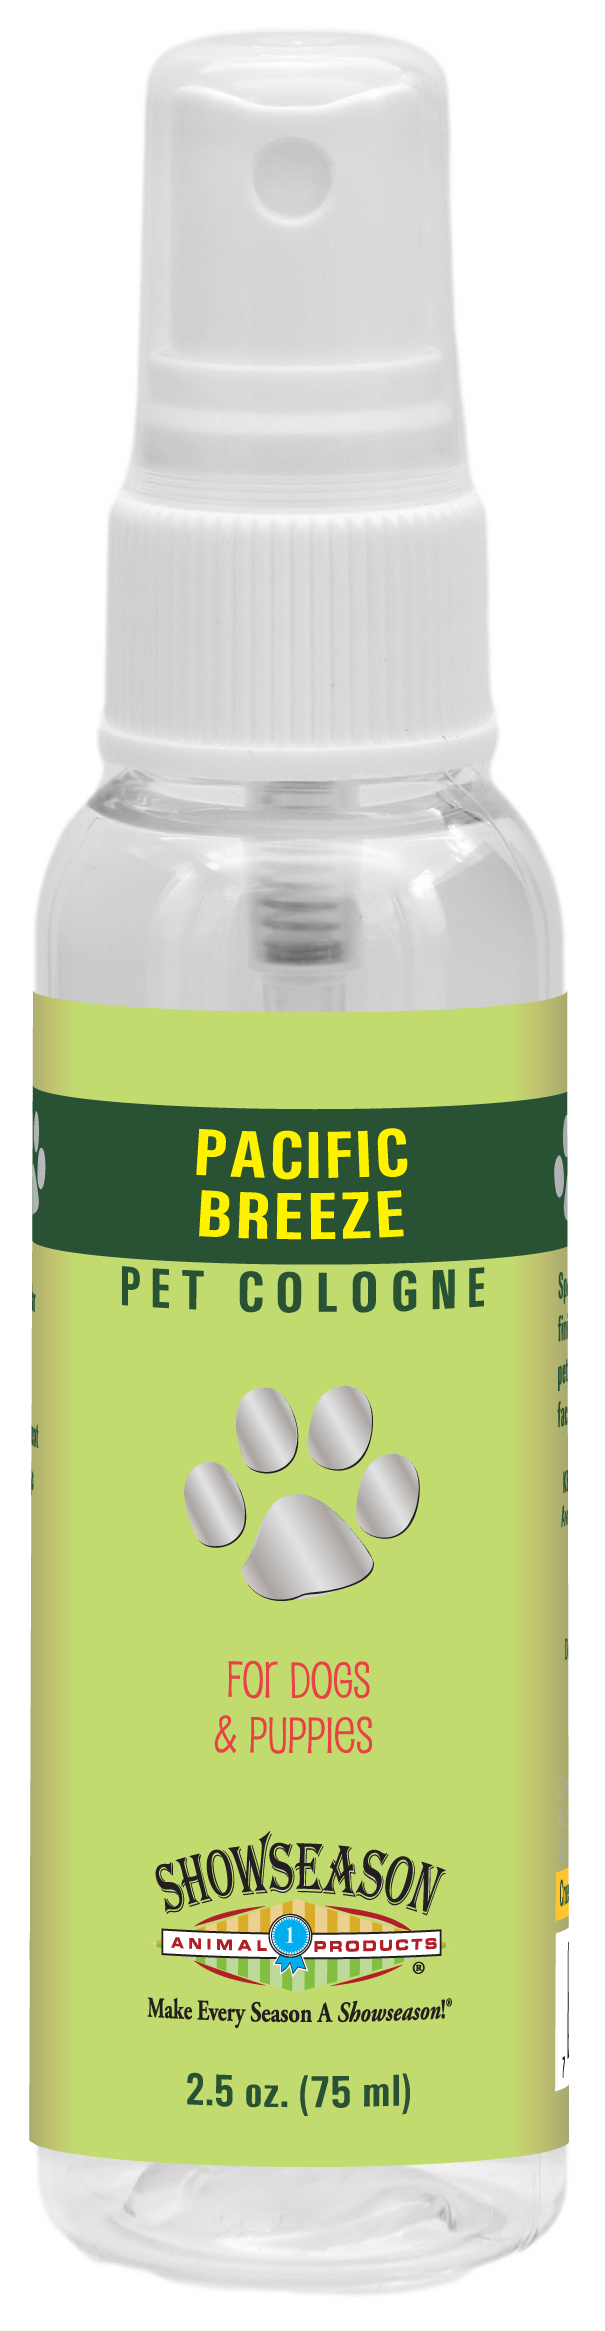 Pacific Breeze Pet Cologne